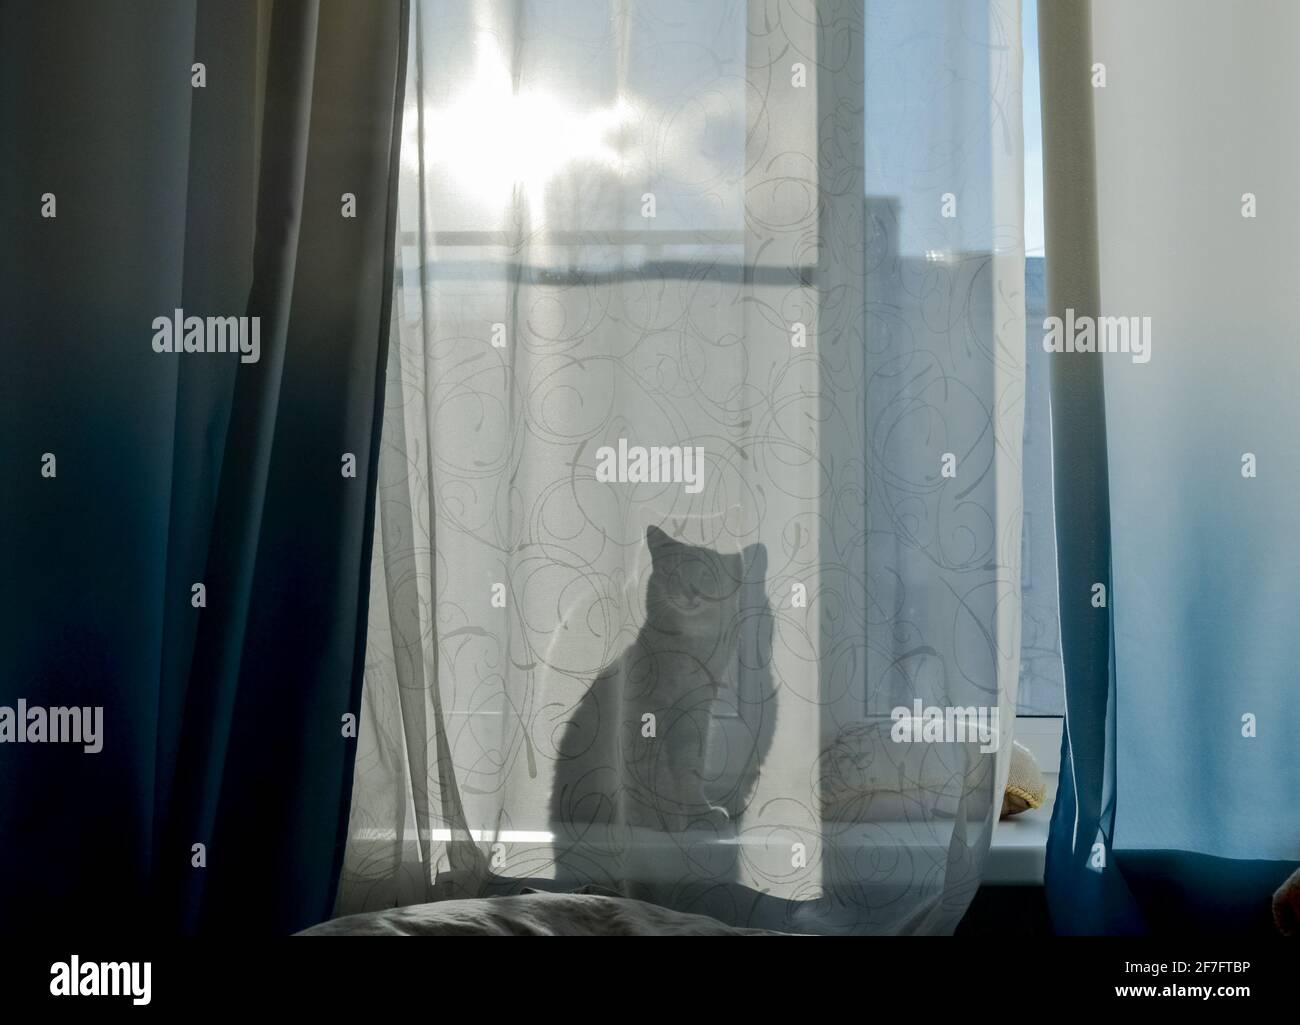 Il gatto è seduto sul davanzale e attraverso la tenda si può vedere la sua ombra, una silhouette. Giorno luminoso e soleggiato fuori dalla finestra. Foto Stock